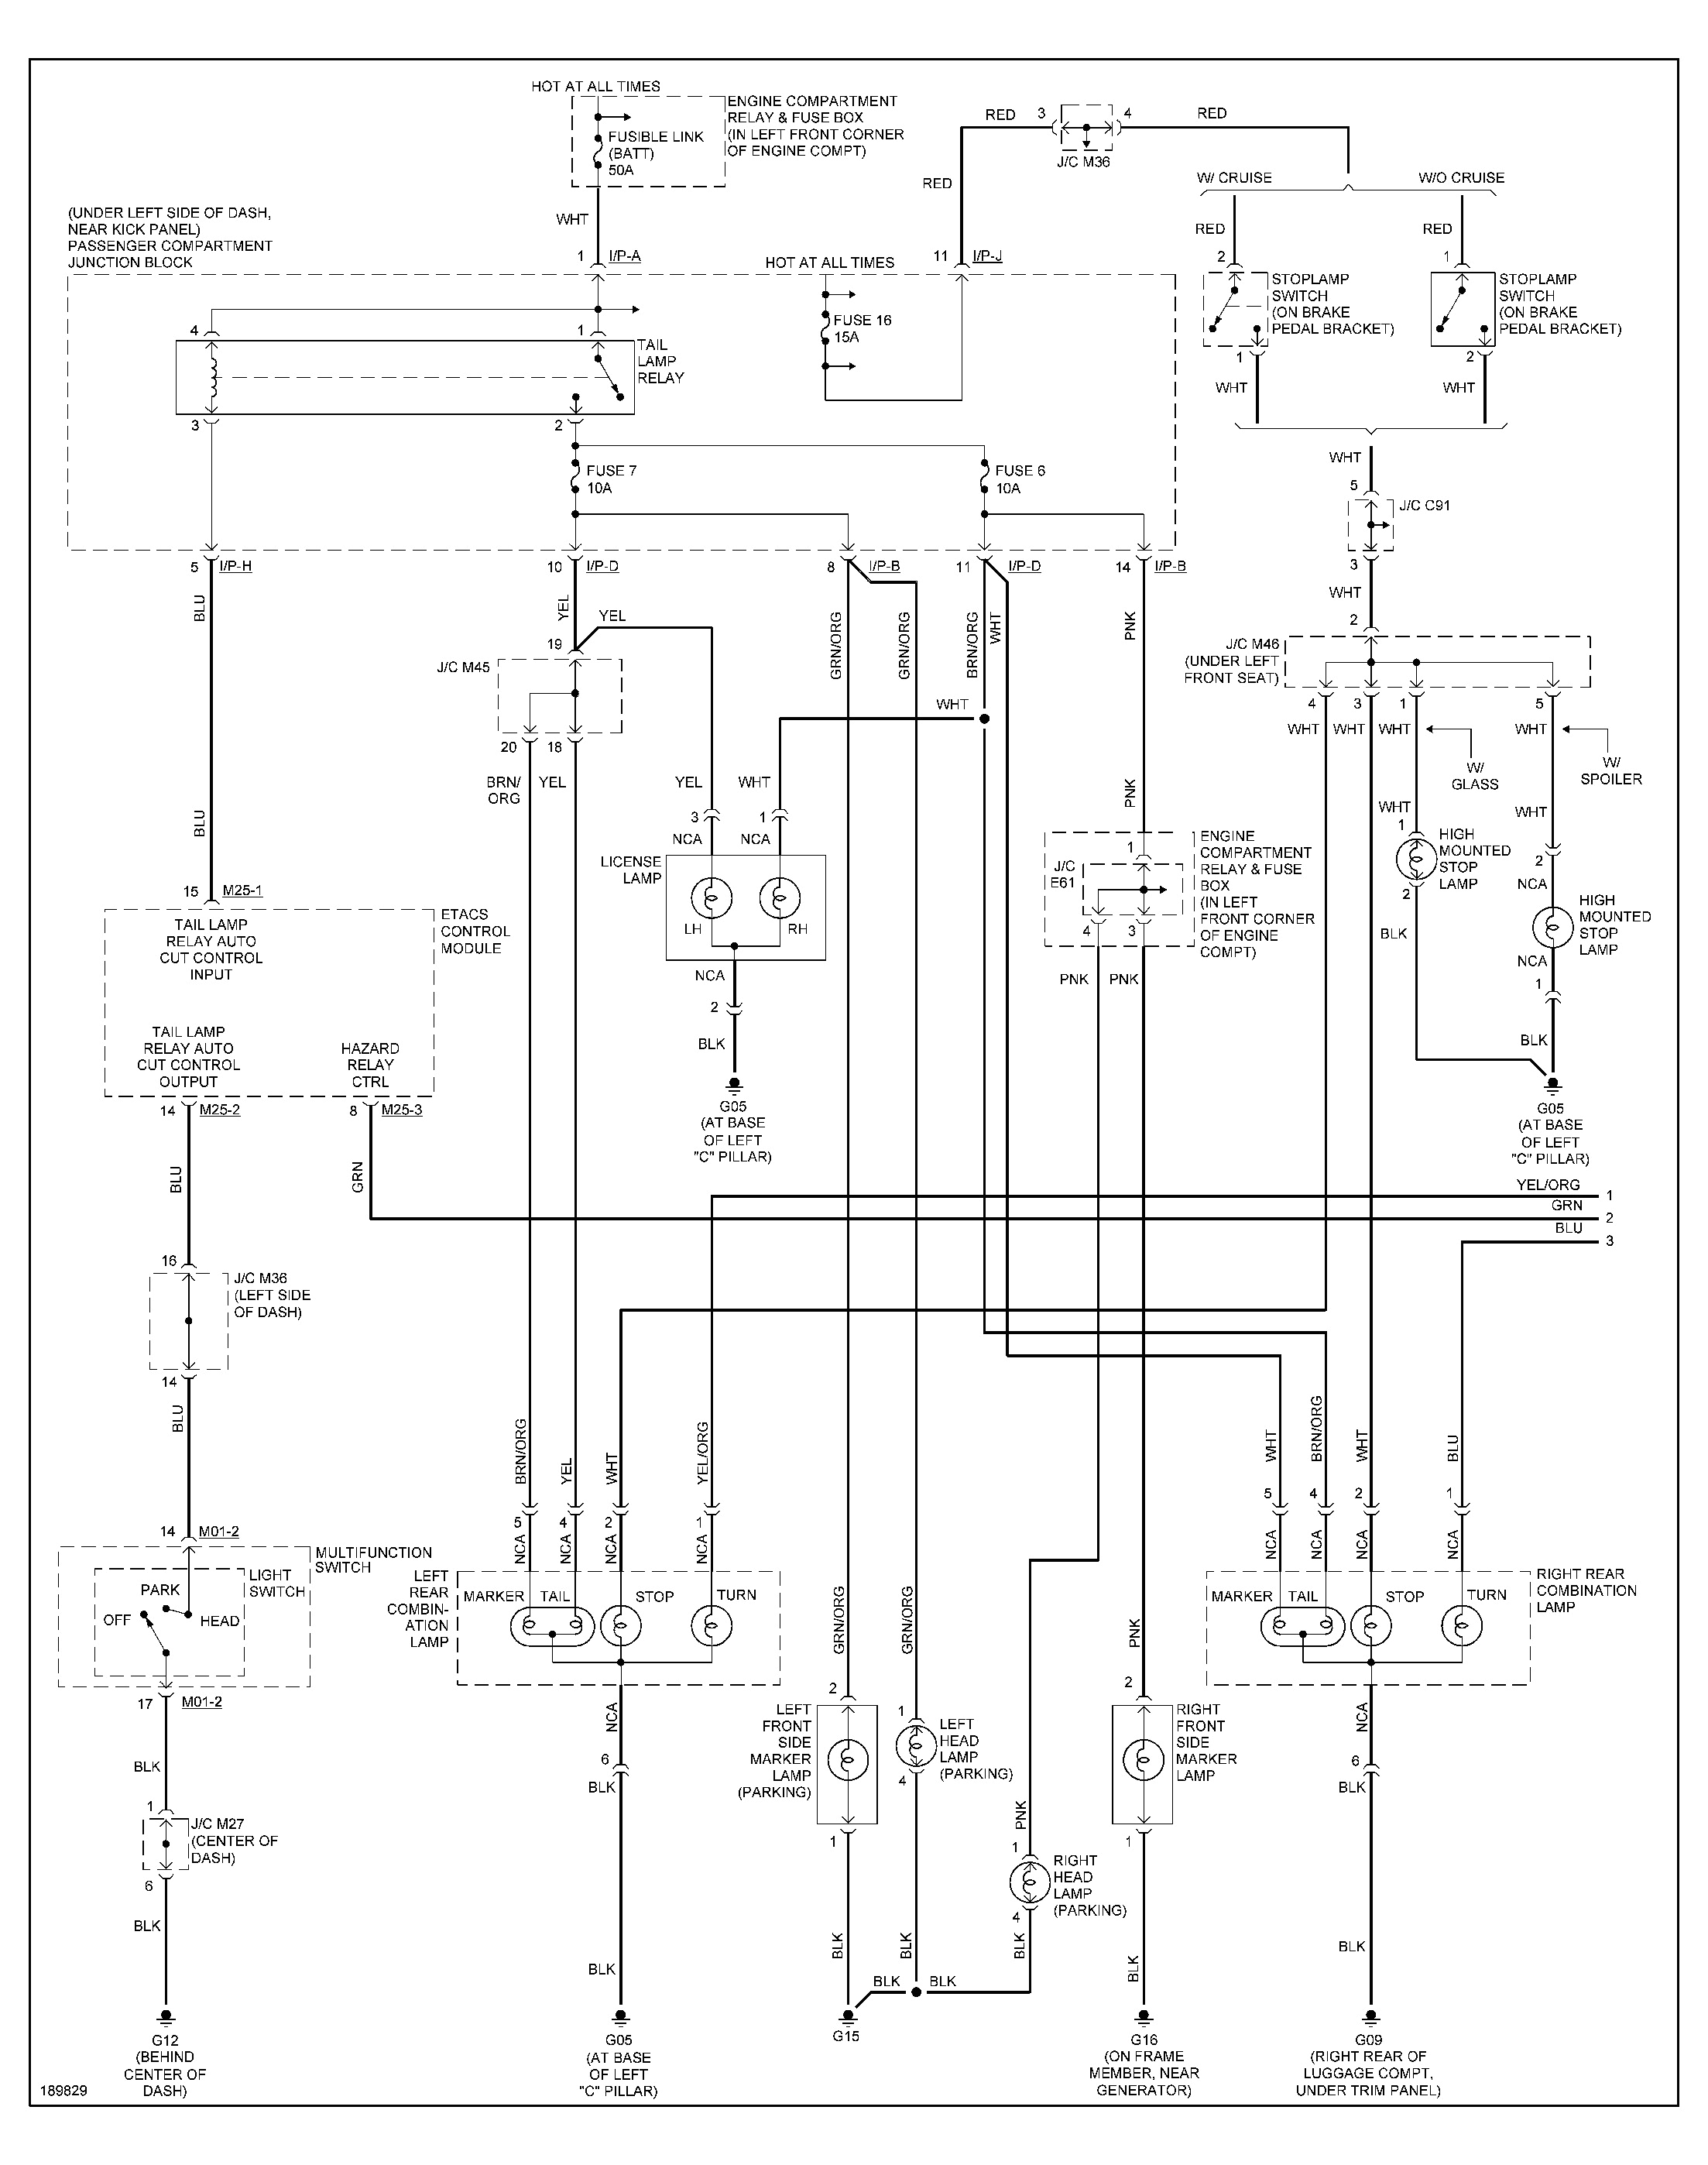 hyundai excel wiring diagram download luxury wiring diagram hyundai ix35 basic wiring diagram e280a2 jpg